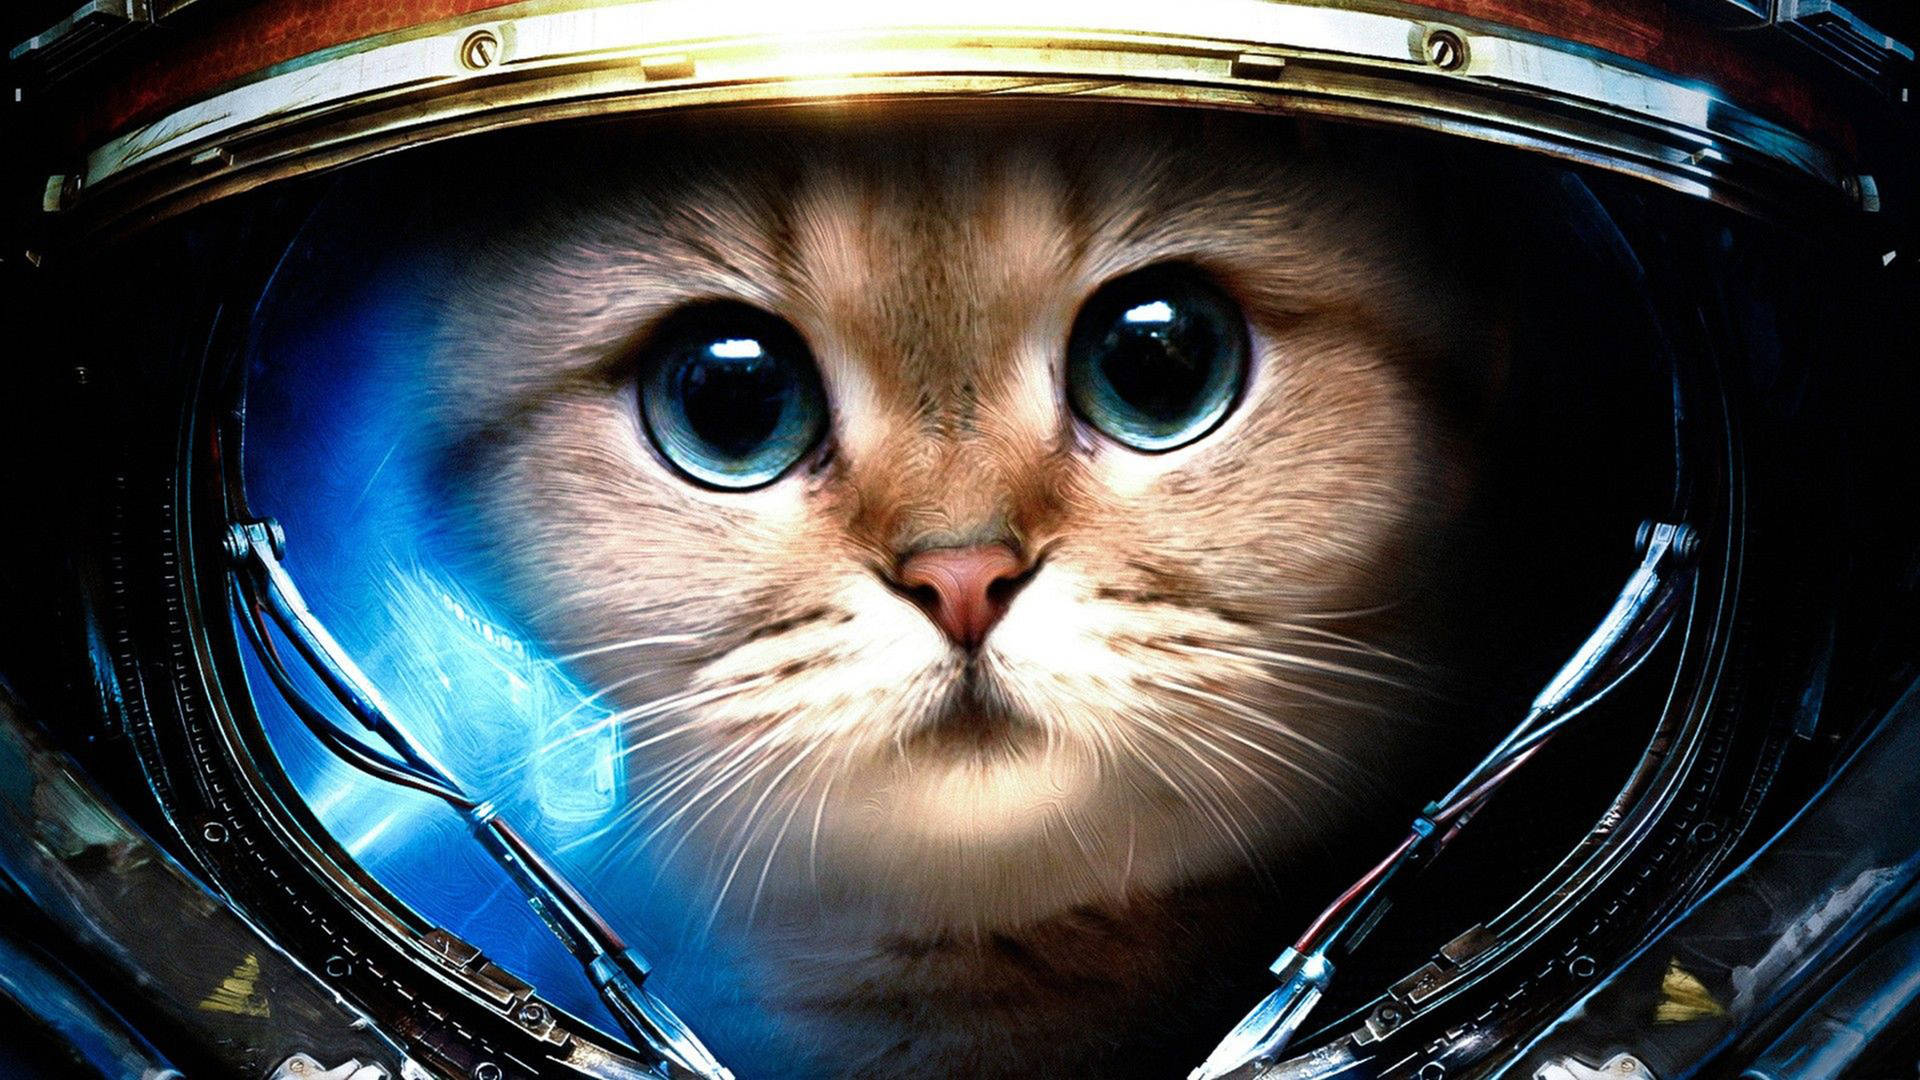 Cool Cat Astronaut Helmet Wallpaper